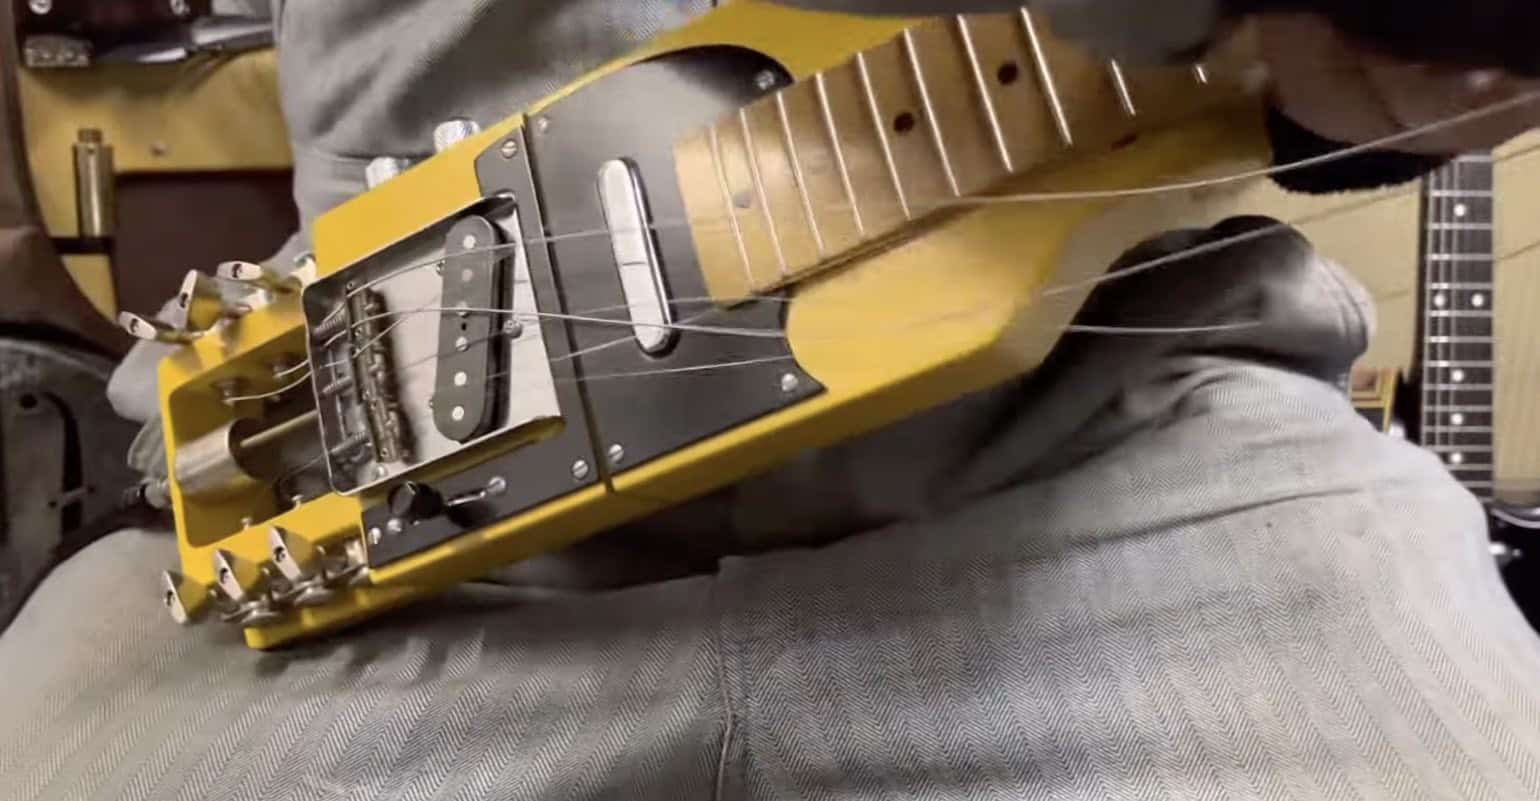 Telecaster inspired folding guitar